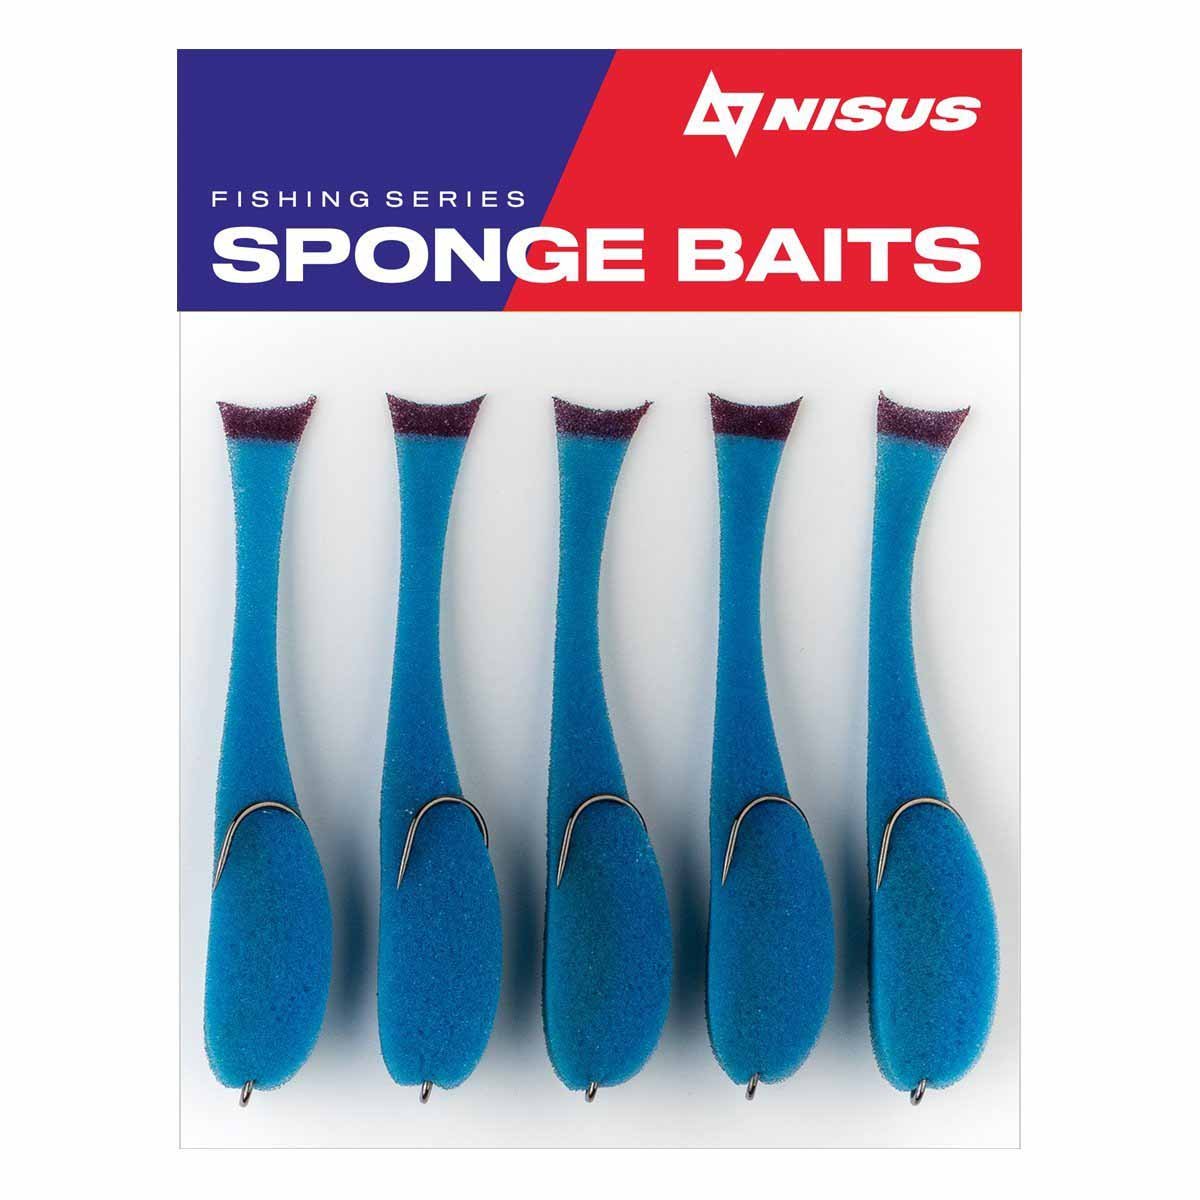 IRRESISTIBLY IRRESISTIBLE Soft Bait Silicone, Sponge Fishing Lure